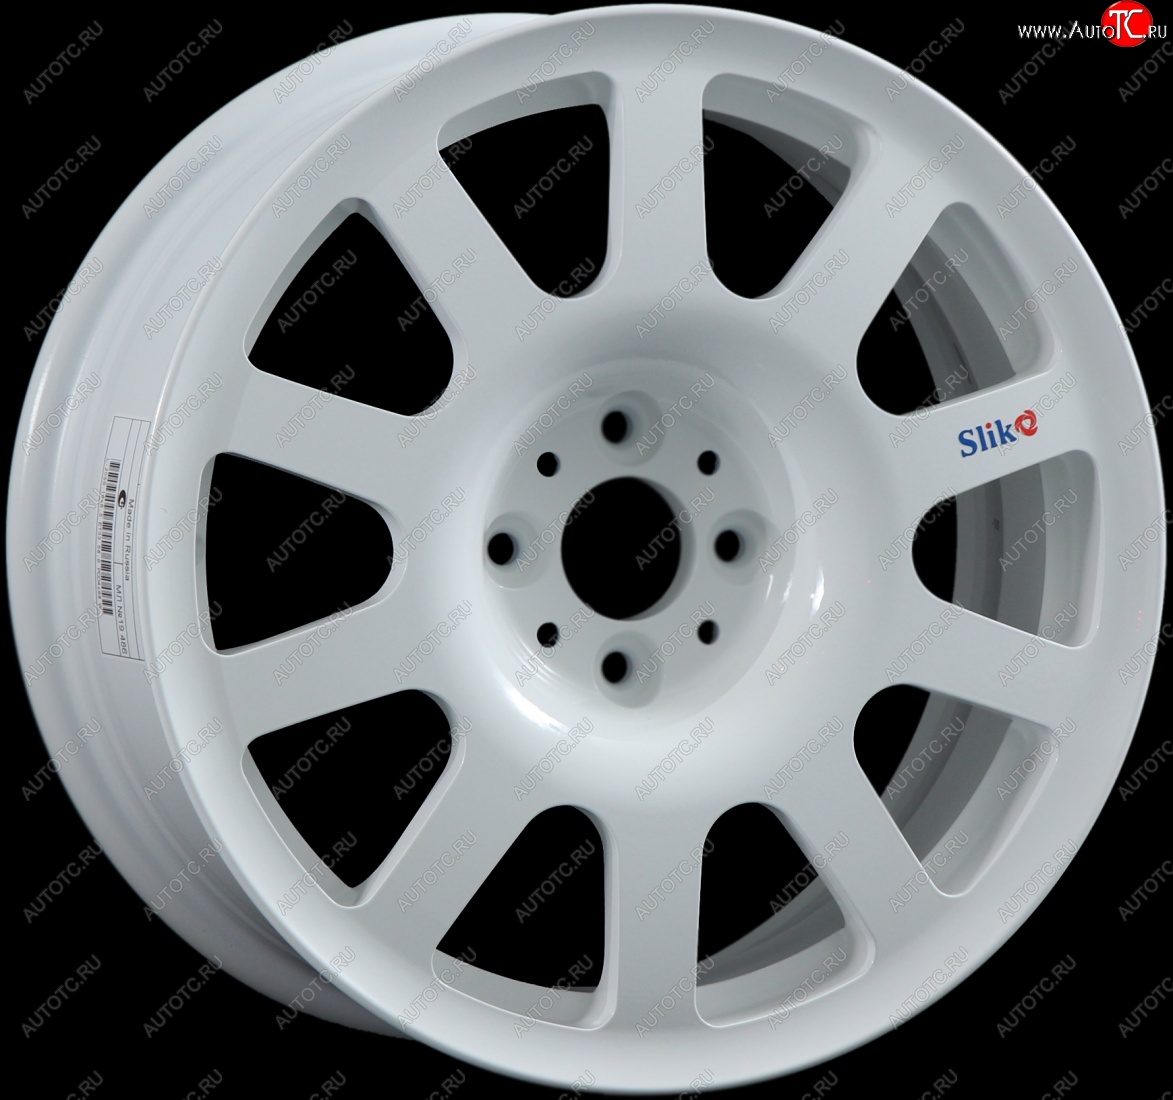 10 199 р. Кованый диск Slik SPORT R16x6.5 Белый (W) 6.5x16 Nissan Tiida 1 седан C11 рестайлинг (2010-2014) 4x114.3xDIA66.1xET40.0 (Цвет: W)